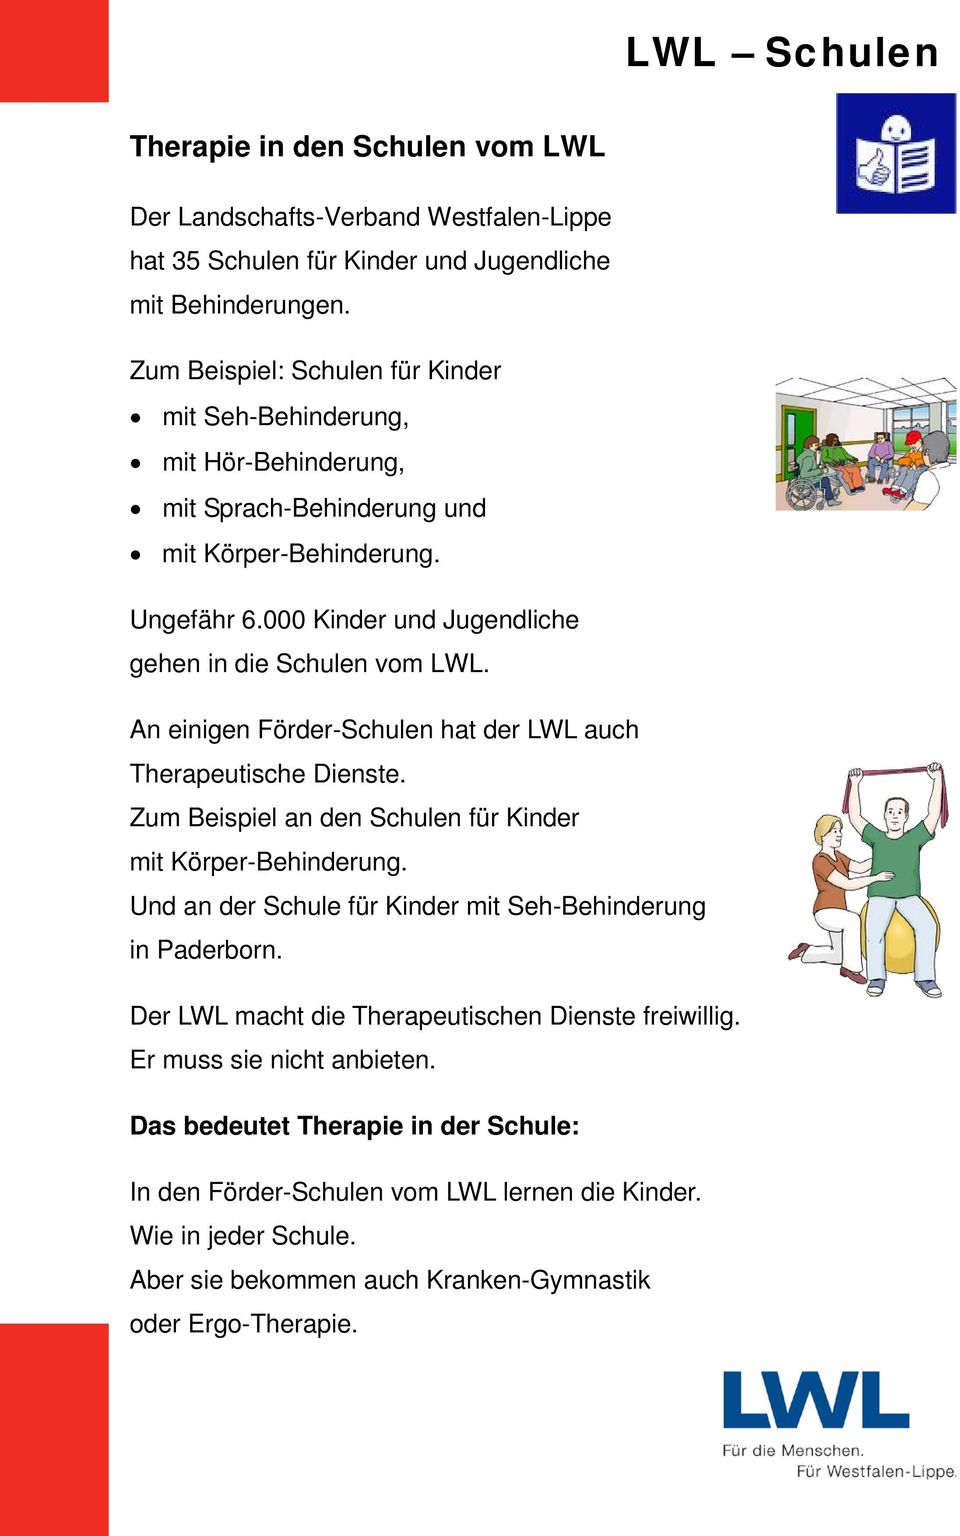 An einigen Förder-Schulen hat der LWL auch Therapeutische Dienste. Zum Beispiel an den Schulen für Kinder mit Körper-Behinderung. Und an der Schule für Kinder mit Seh-Behinderung in Paderborn.